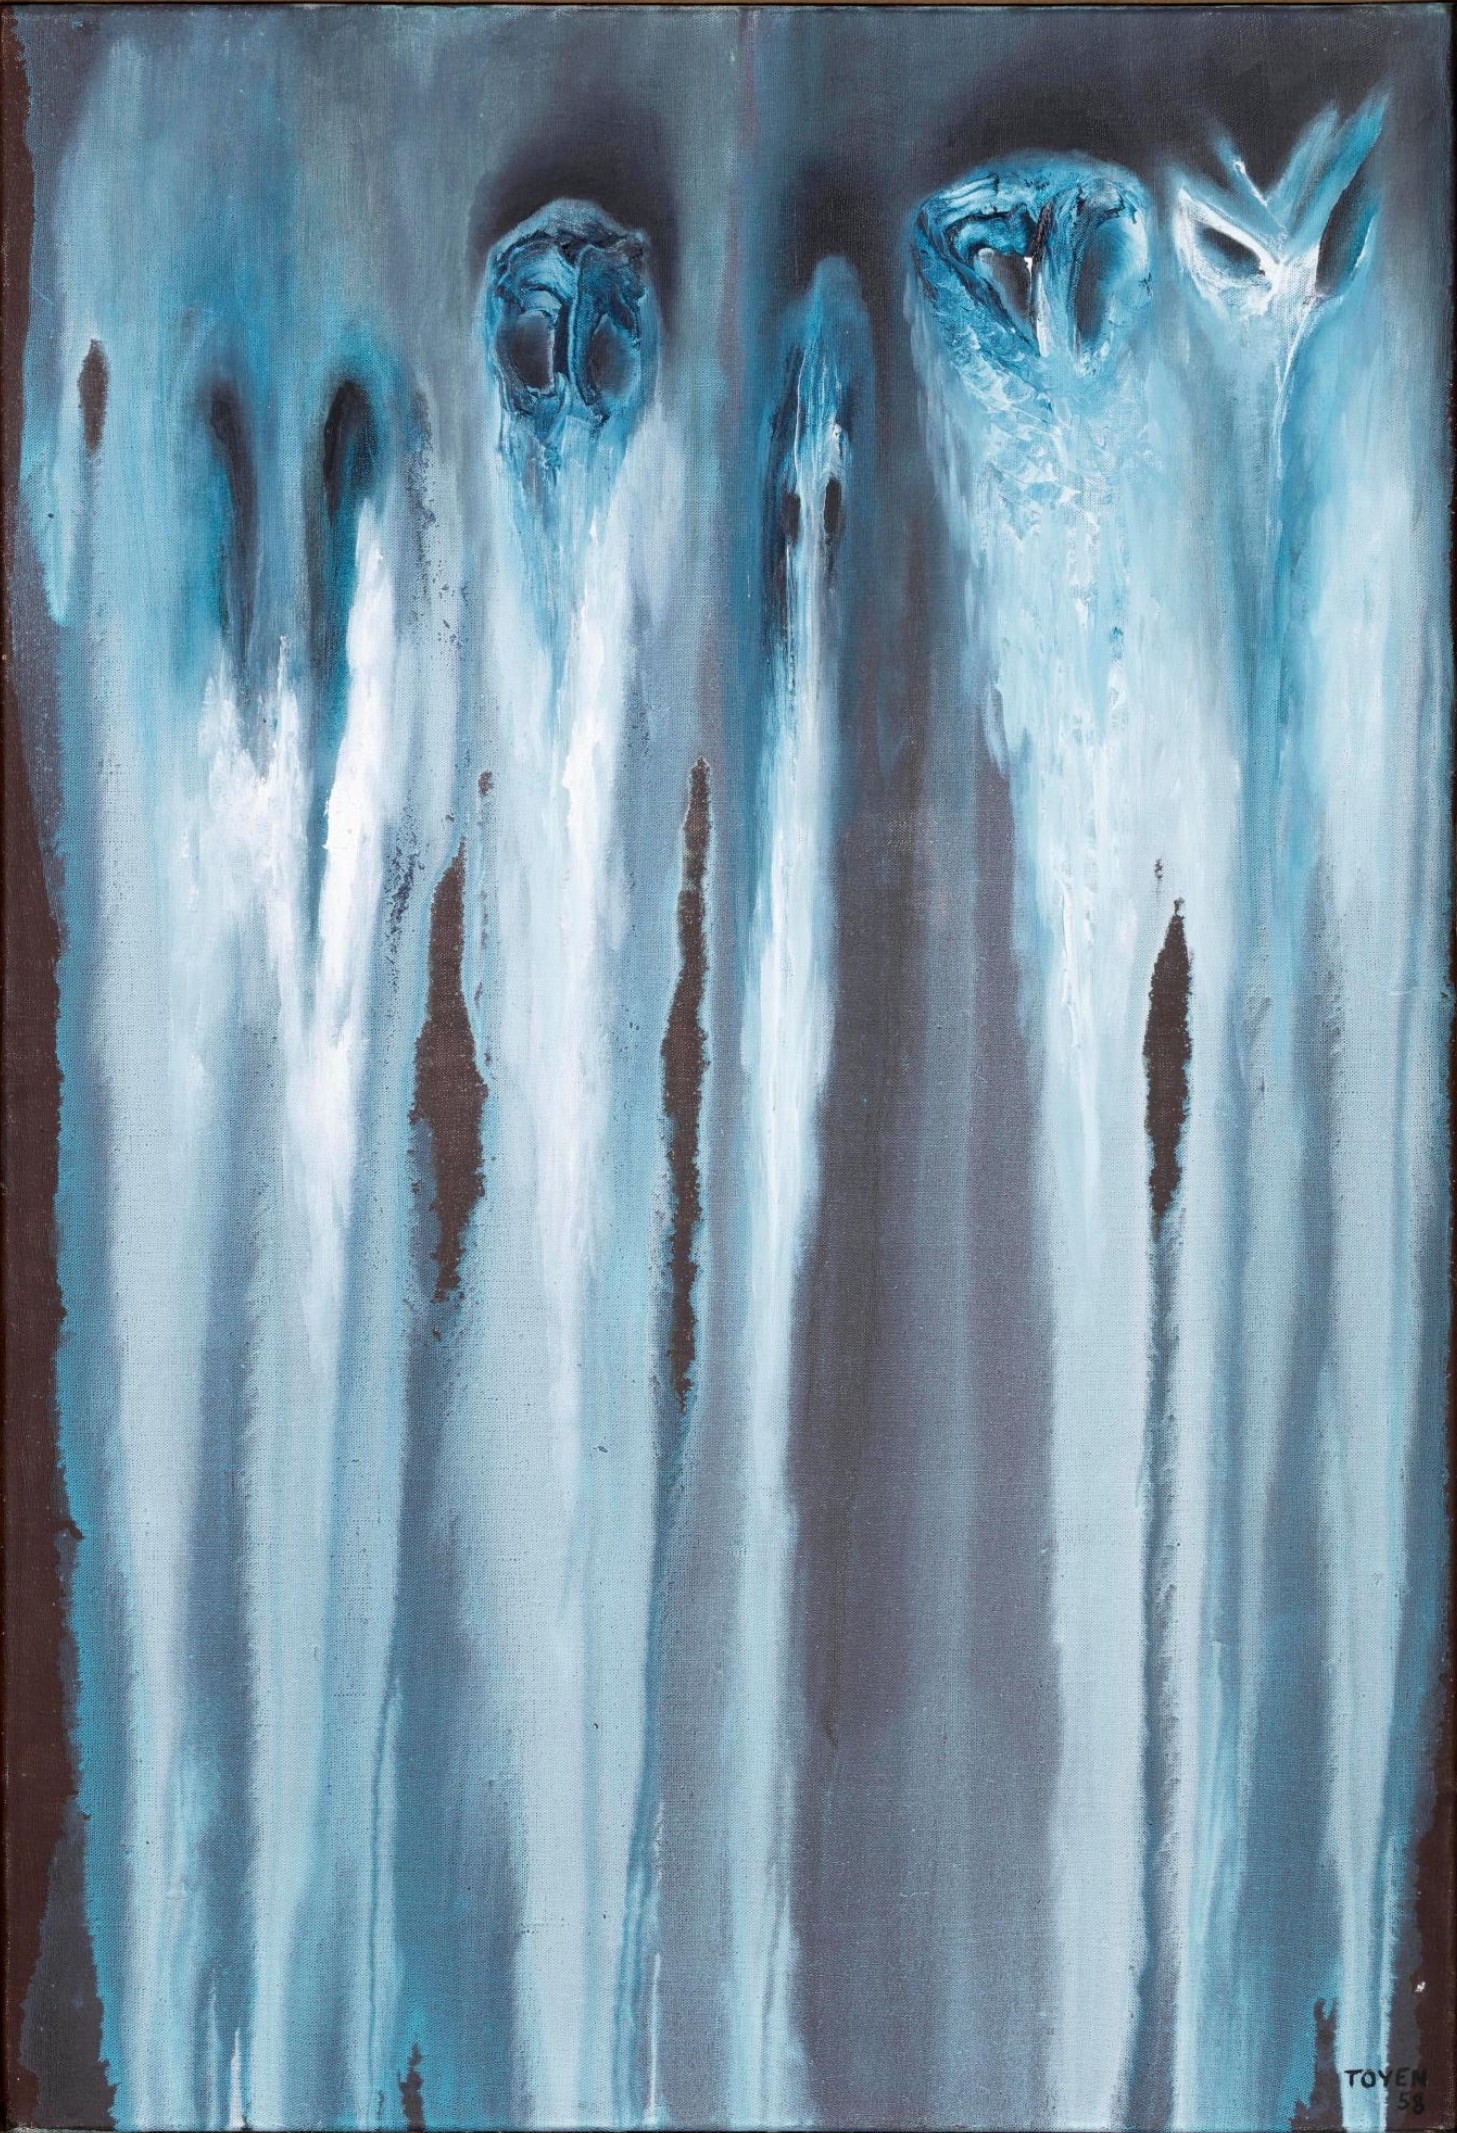 Toyen: Dýchání spánku, 1958, olej na plátně, 65,5 x 46 cm,  vyvolávací cena: 8 000 000 Kč (+ 21% provize), Adolf Loos Apartment and Gallery 27. 11. 2021